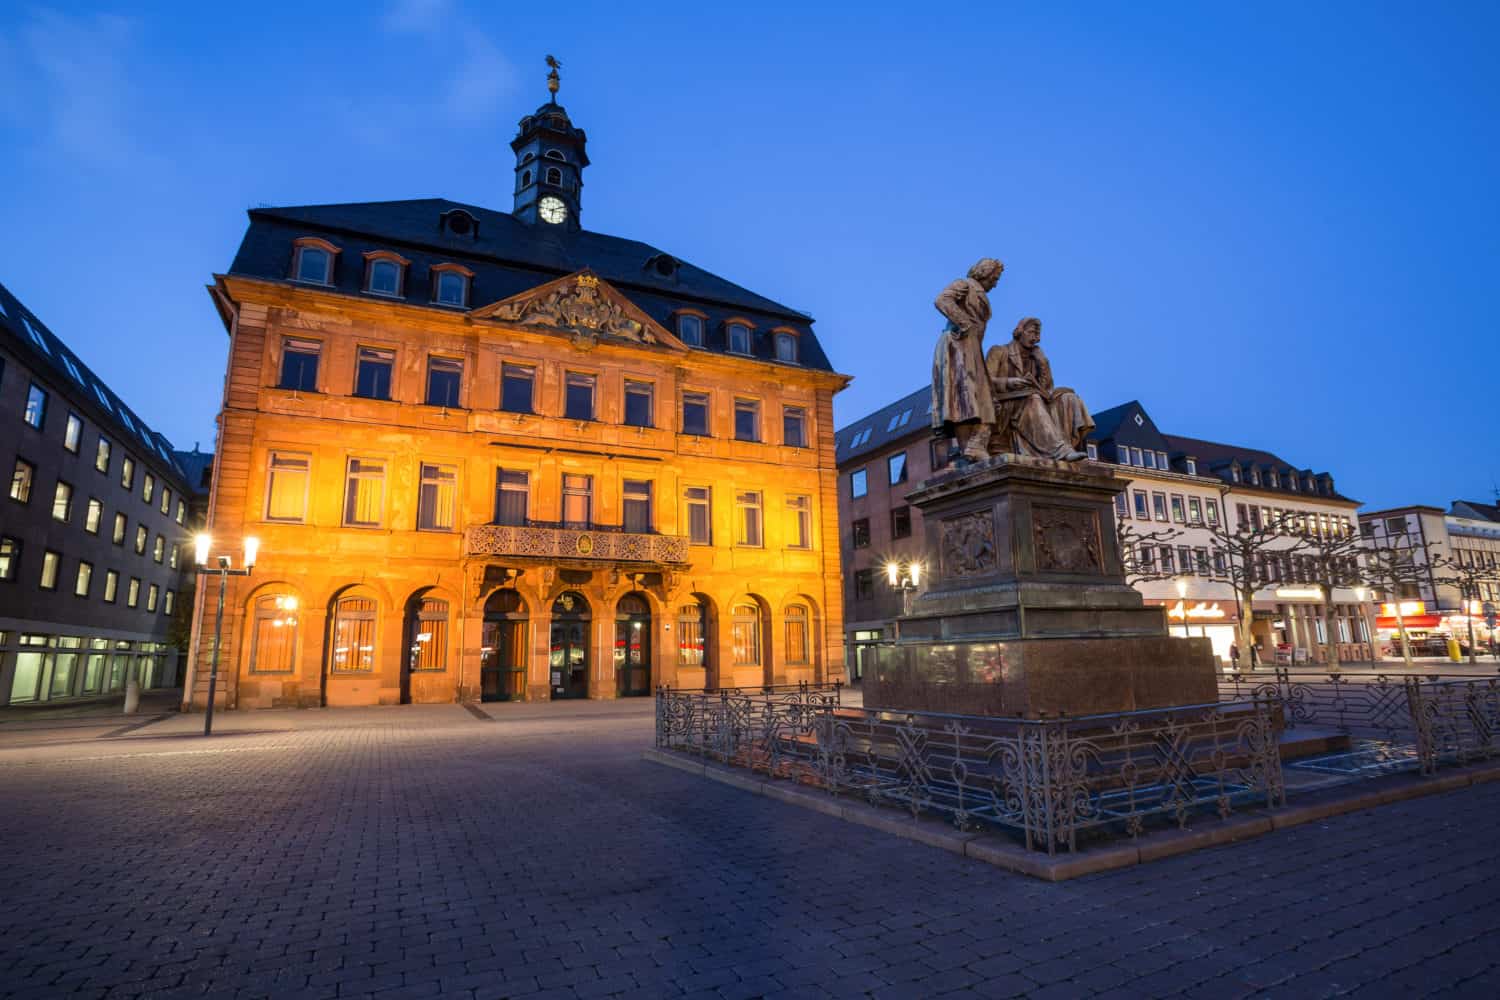 Het monument voor de gebroeders Grimm in Hanaus an de romantische route in Duitsland 